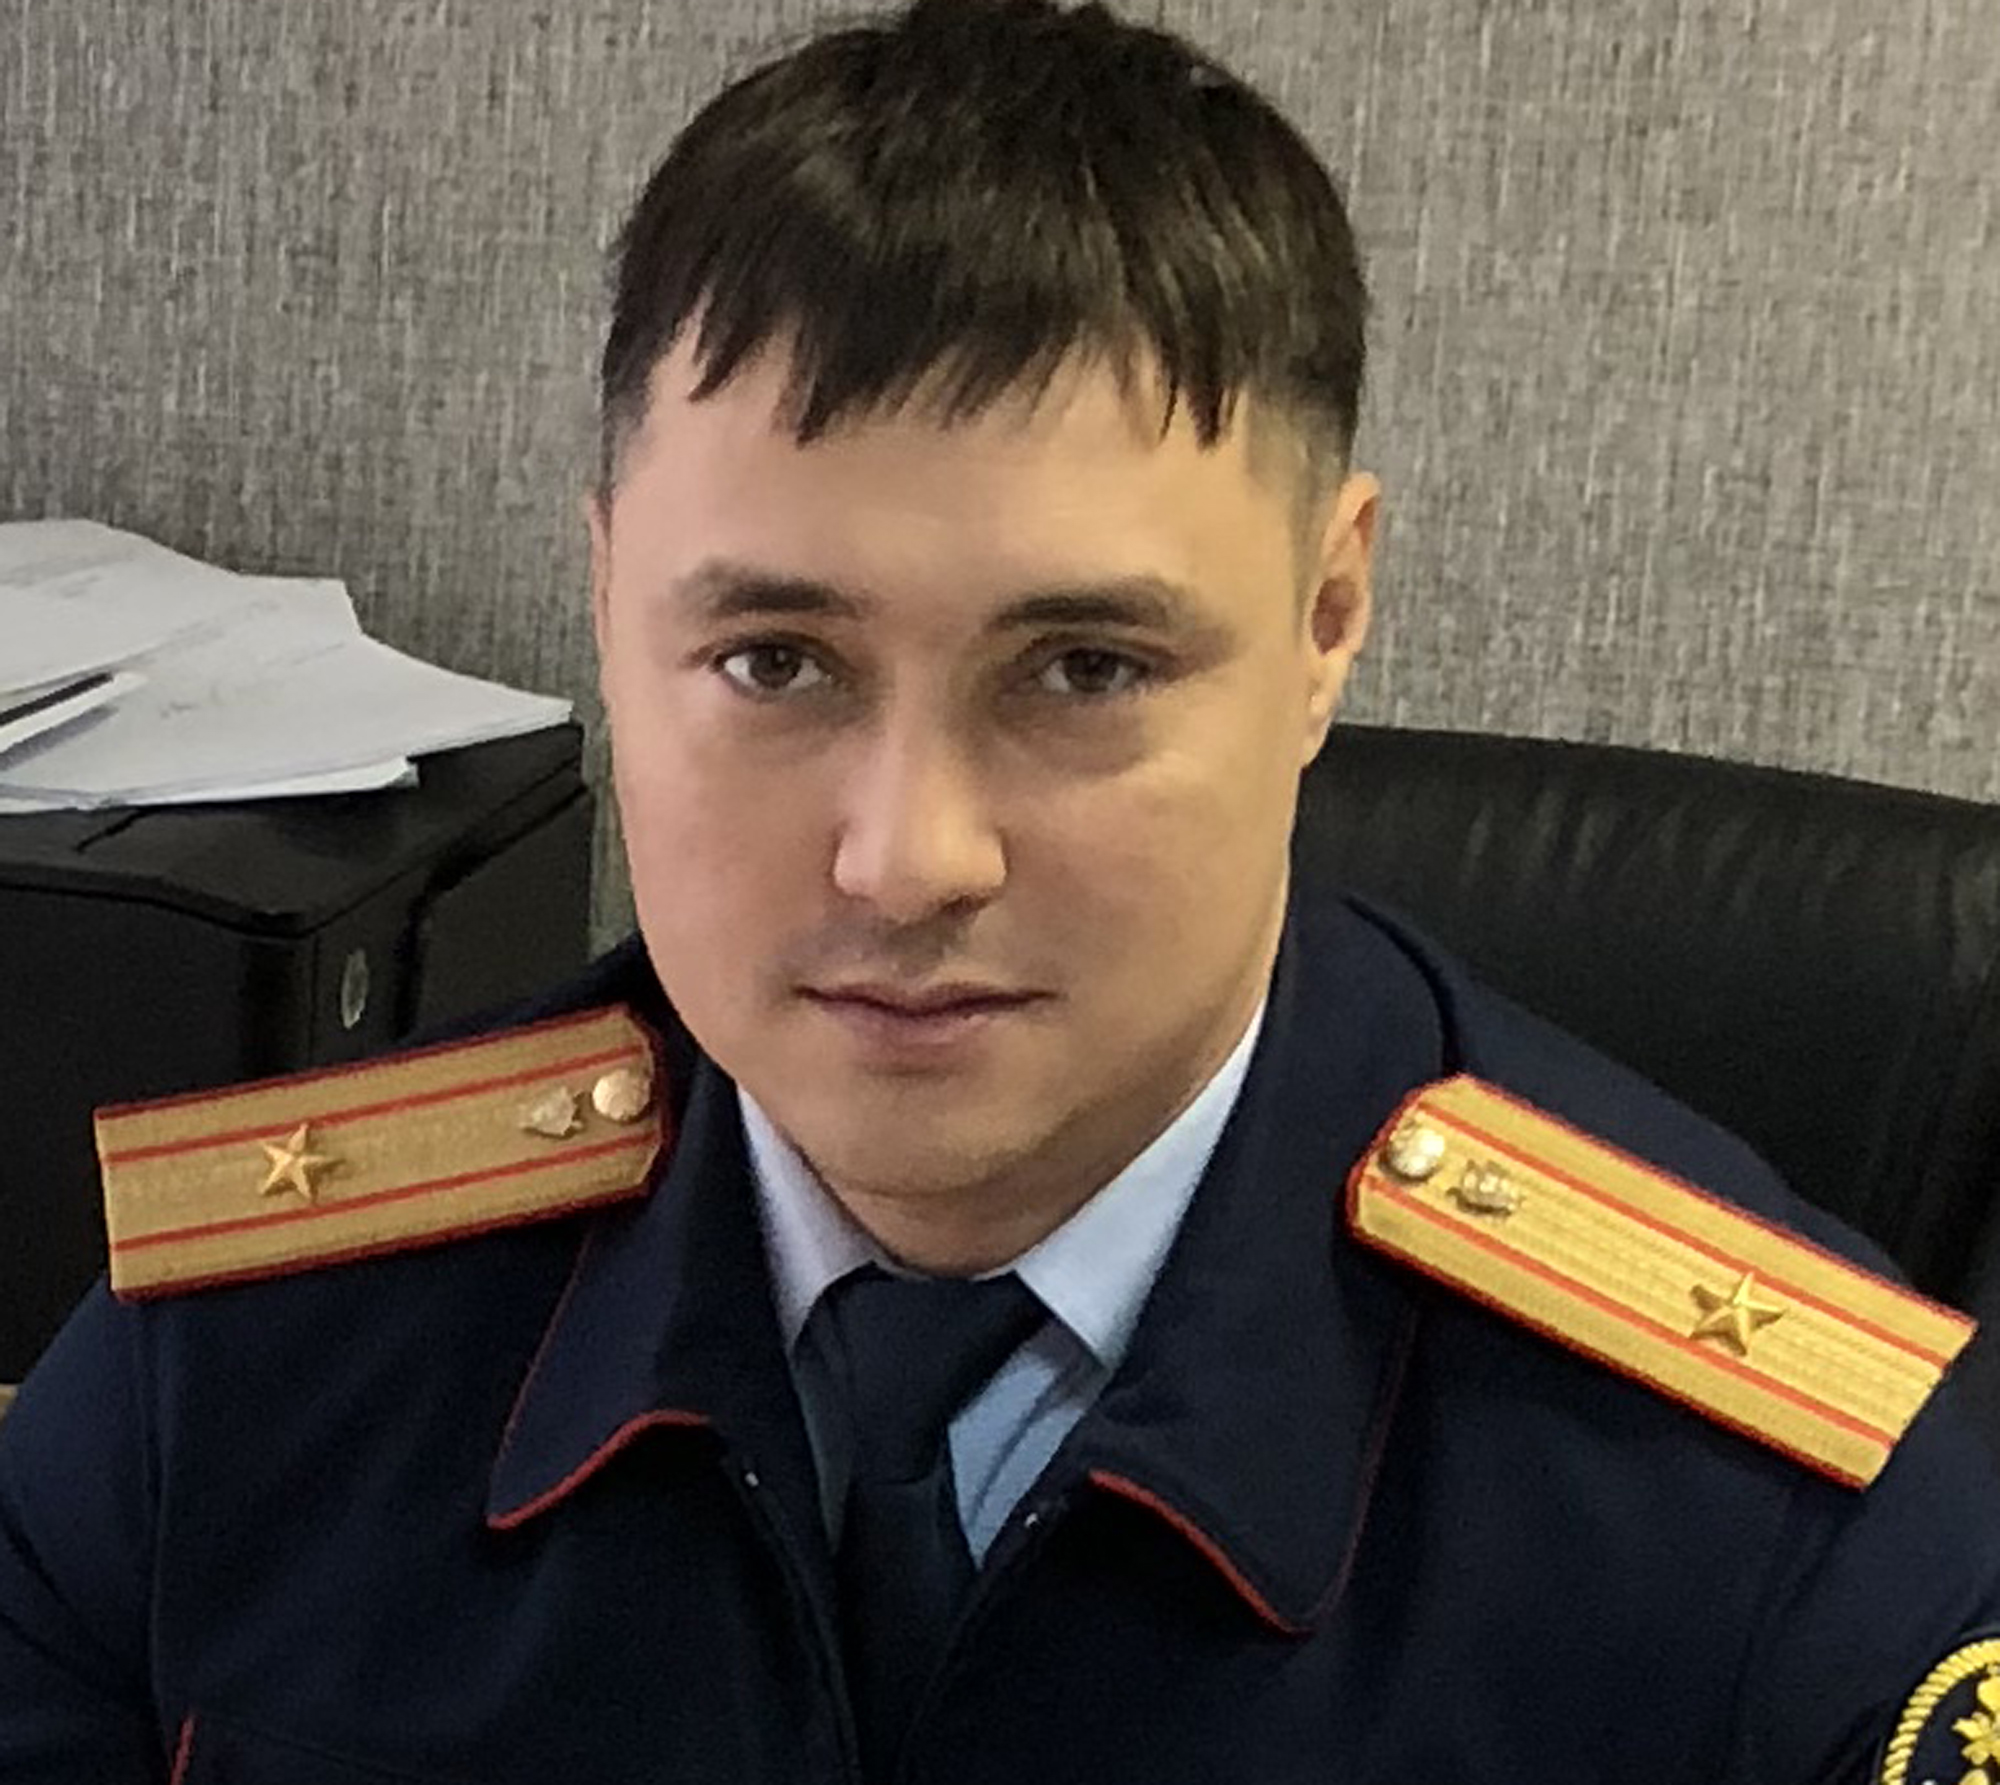 Новозыбковцев ждет на прием руководитель межрайонного следственного отдела